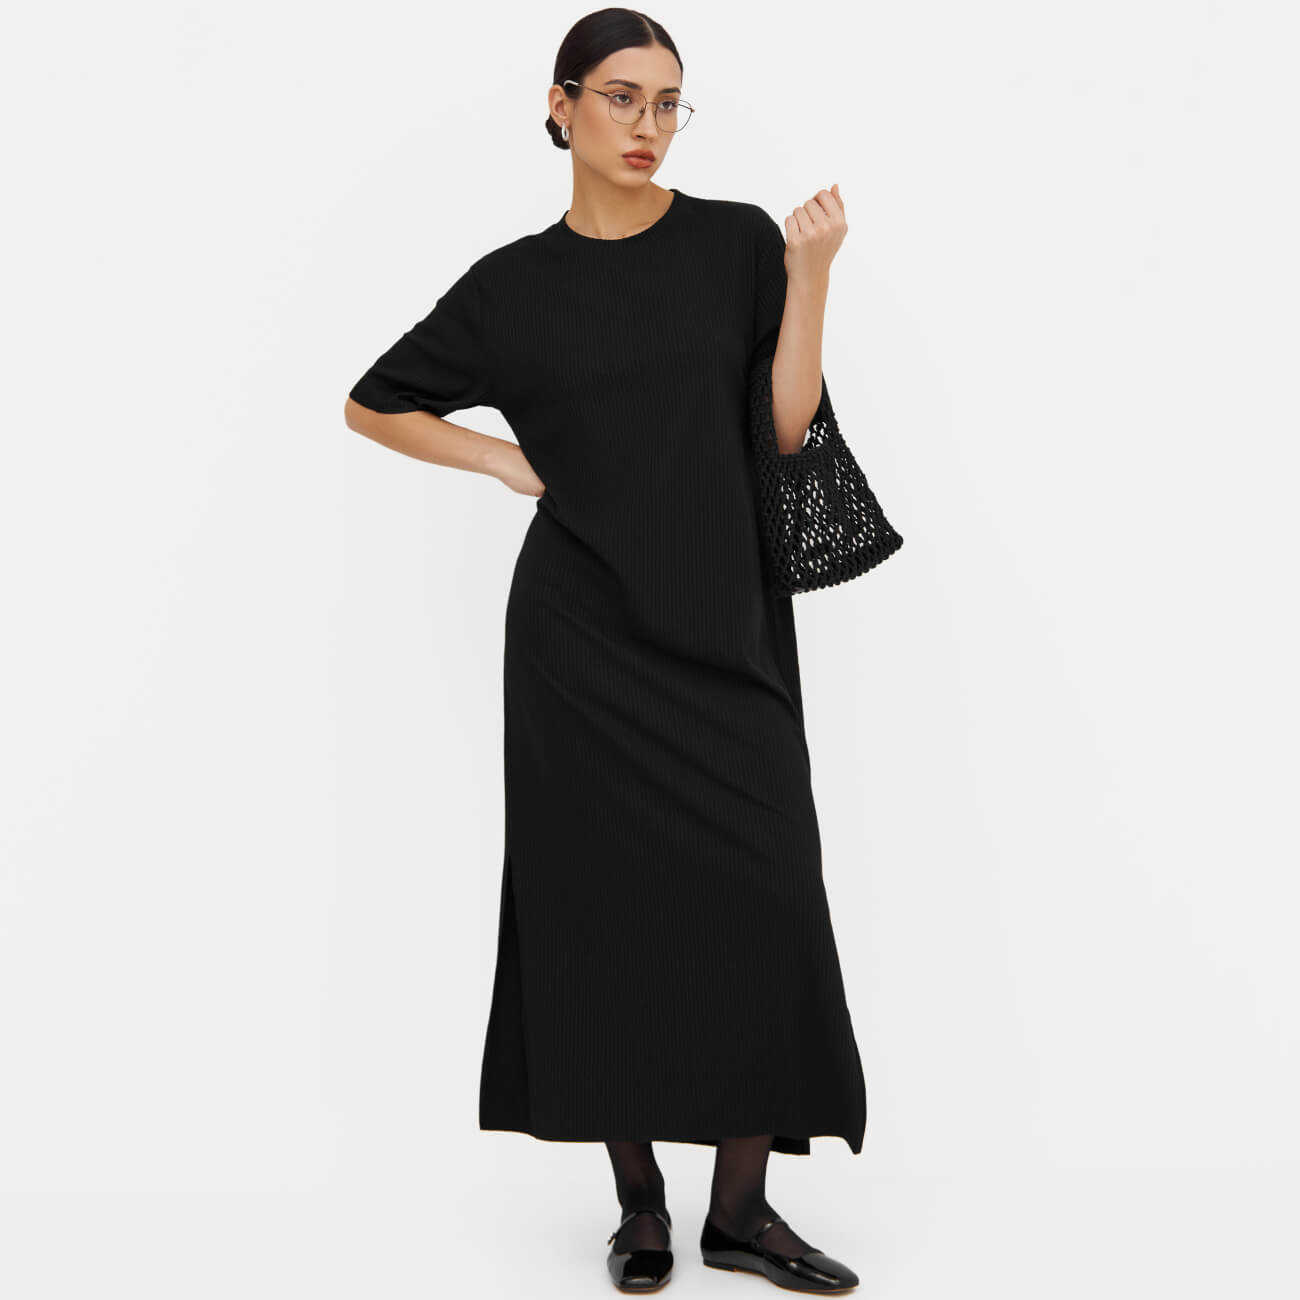 Платье женское, макси, р. S, с коротким рукавом, в рубчик, полиэстер/вискоза, черное, Rhea - фото 1